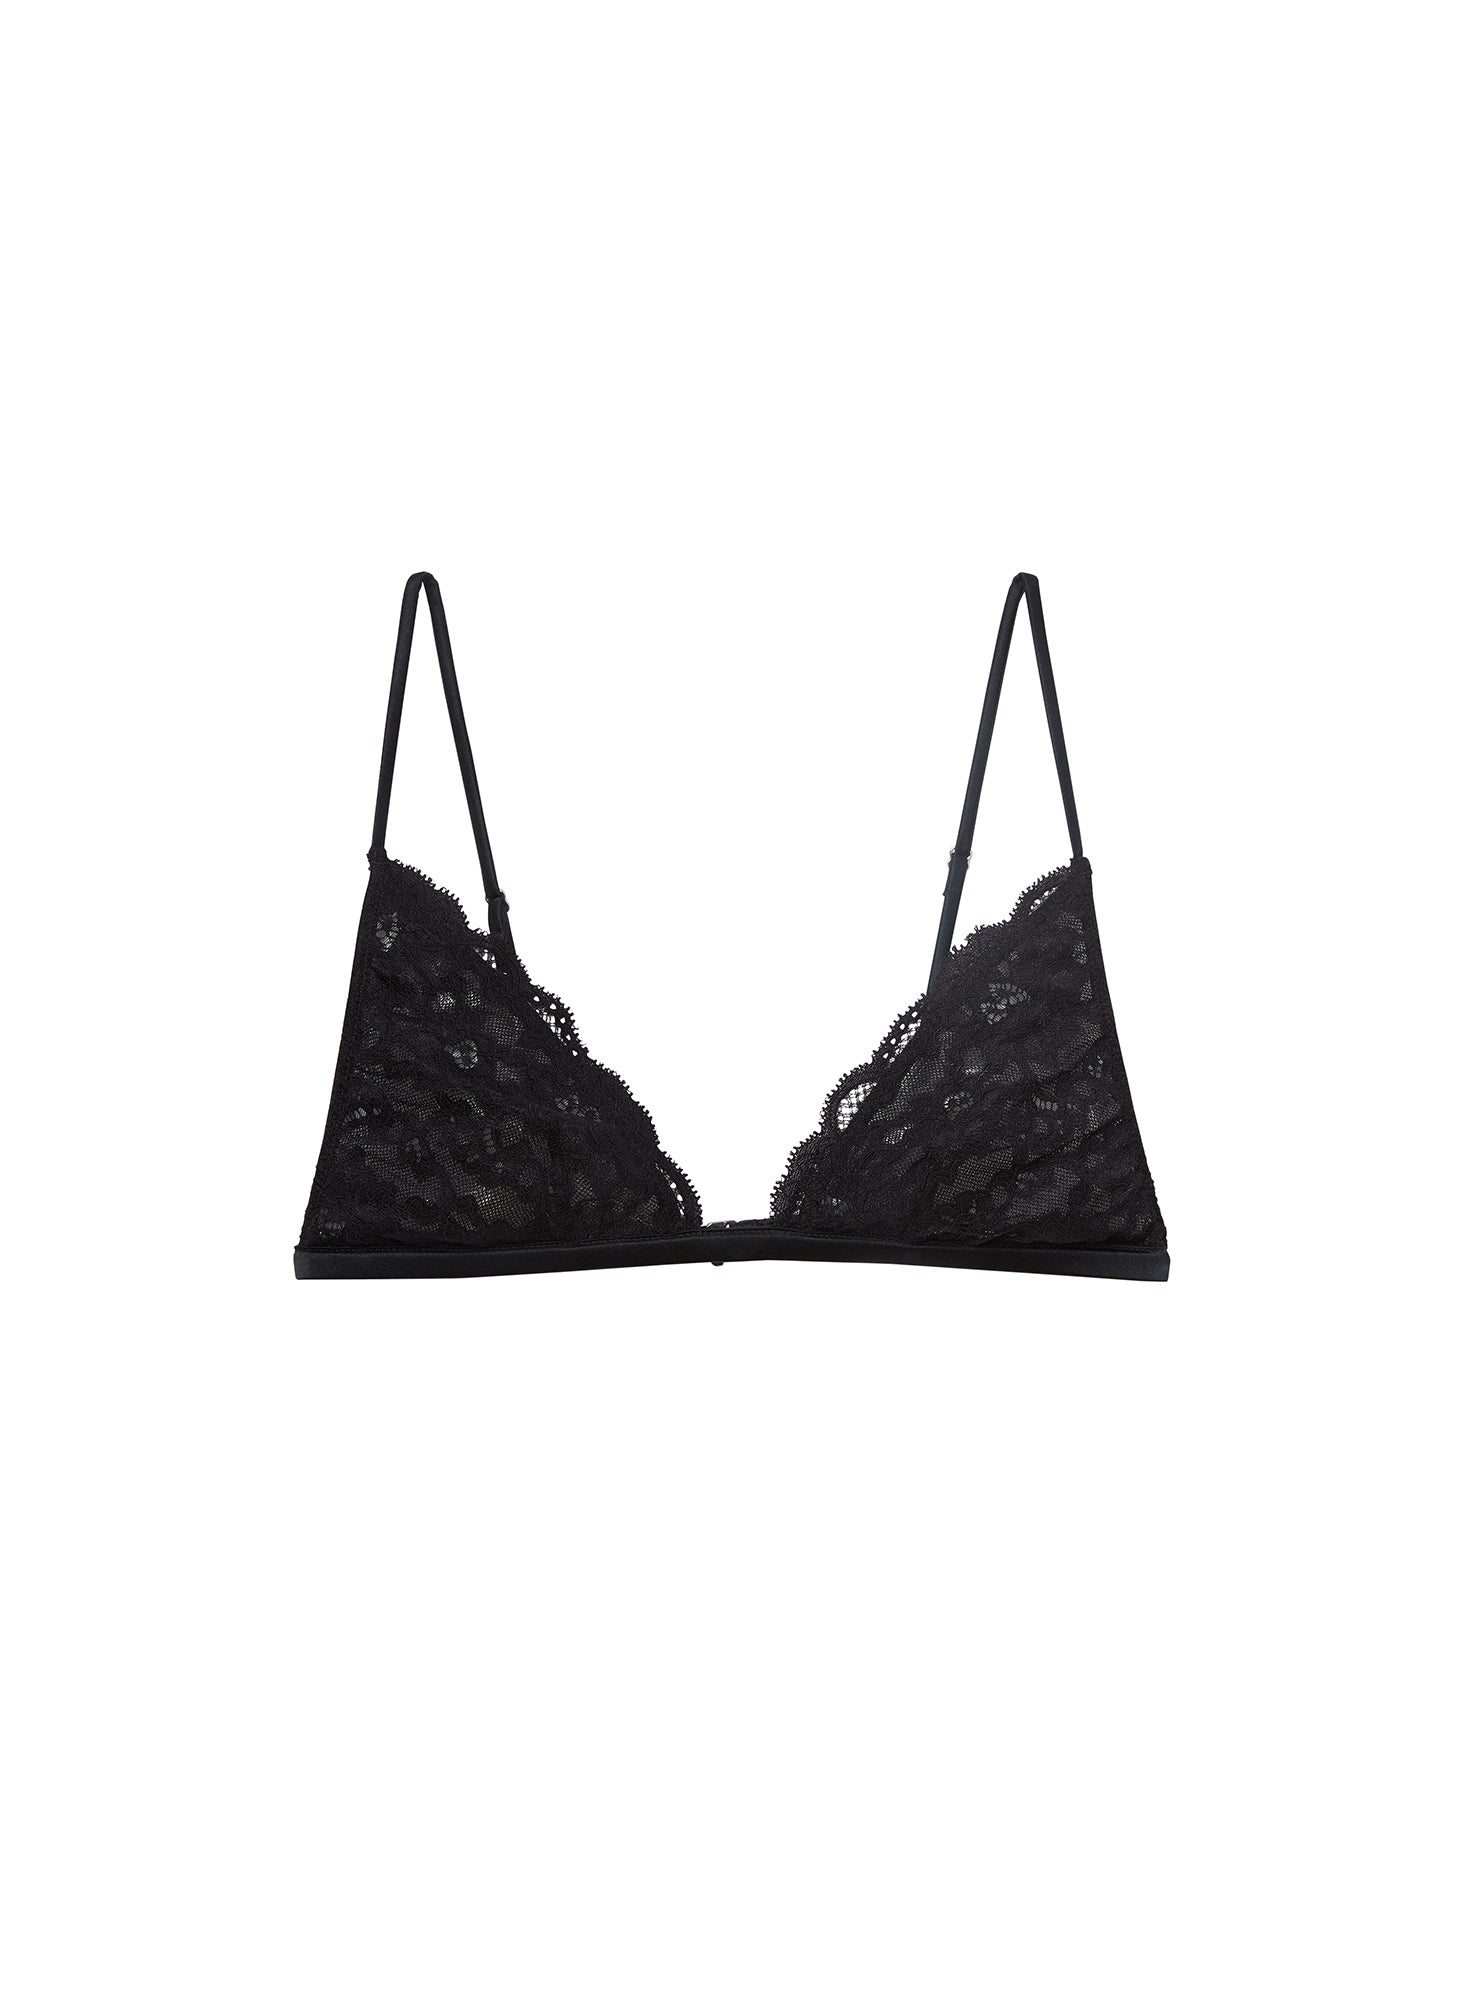 Black lace triangle bra top, Bras, Women'secret